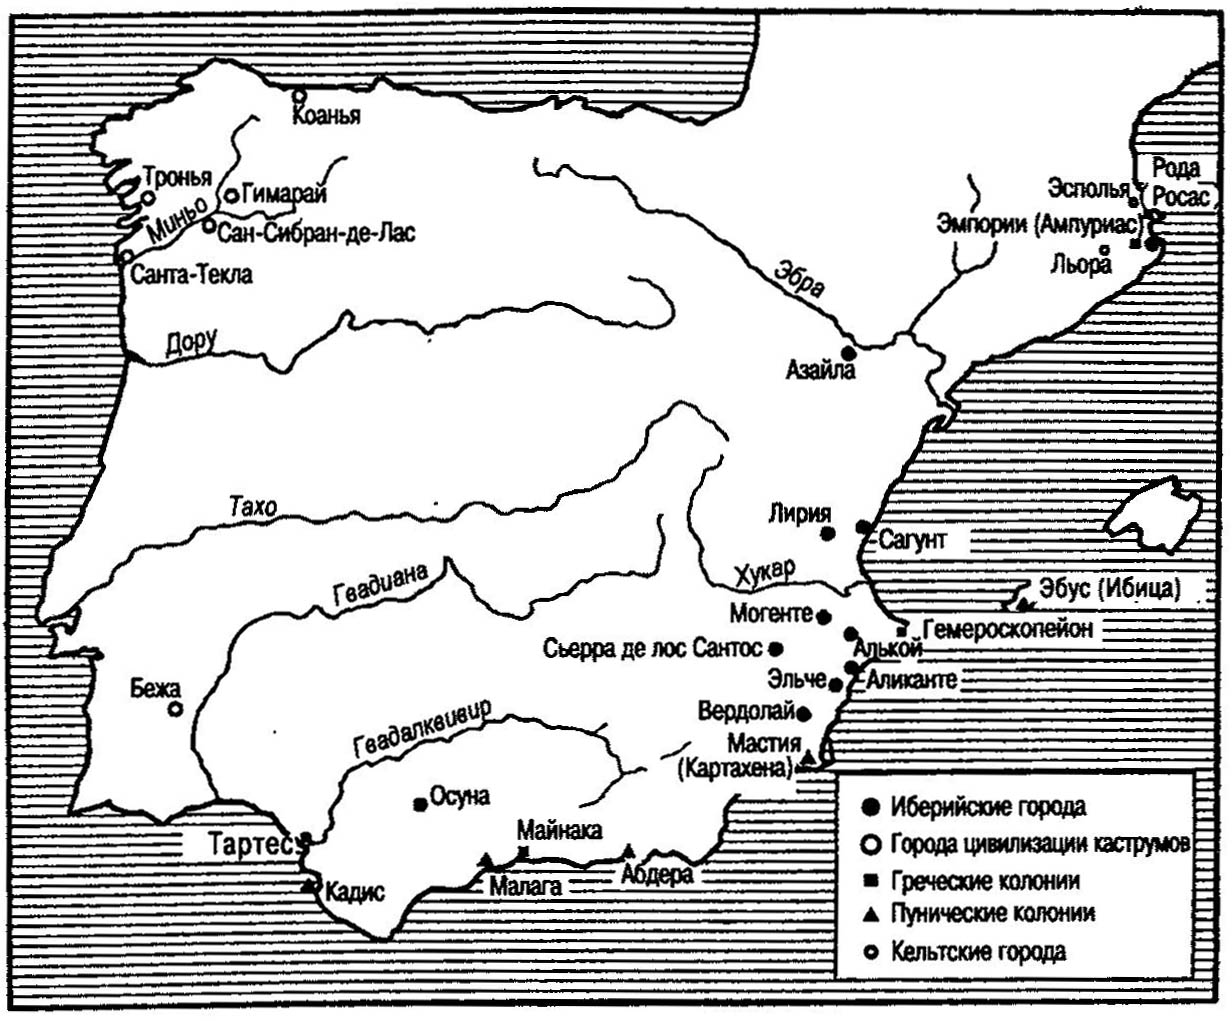 Протоисторические города Иберийского полуострова (VI-II века до нашей эры)